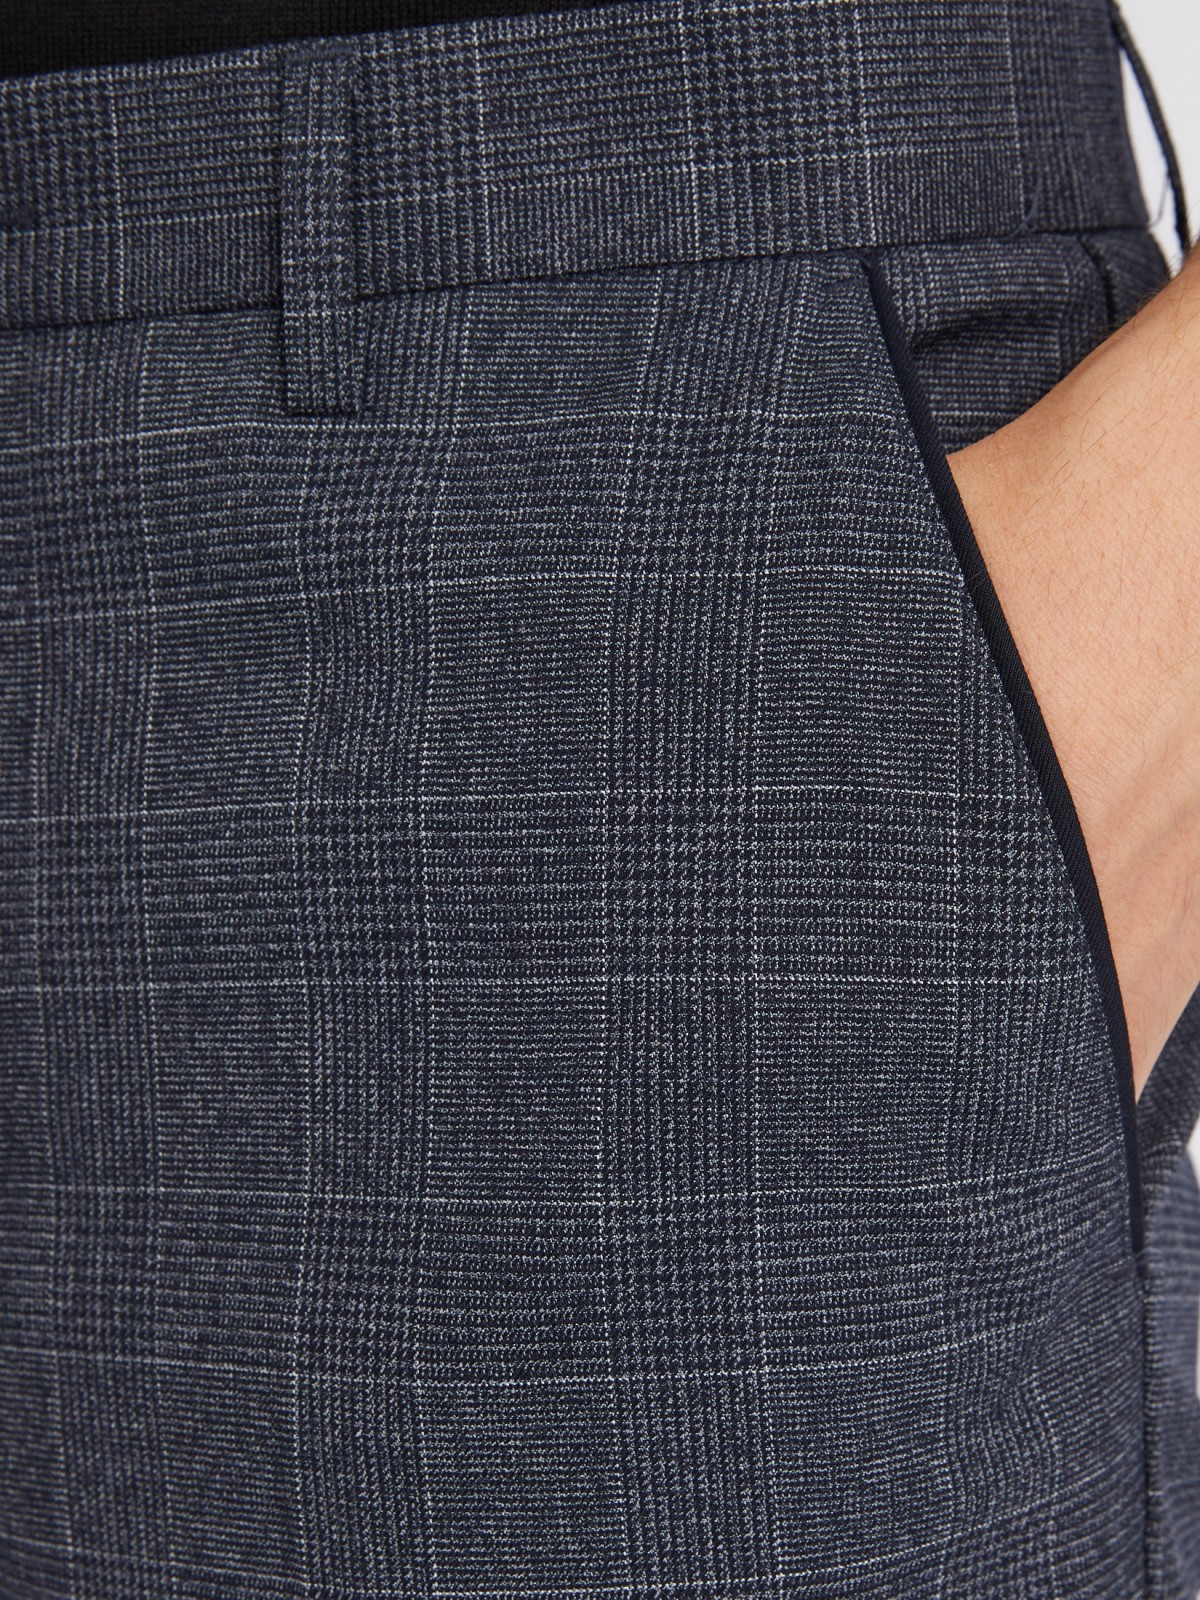 Офисные брюки силуэта Slim со стрелками и узором в клетку zolla 012337366043, цвет синий, размер 34 - фото 4